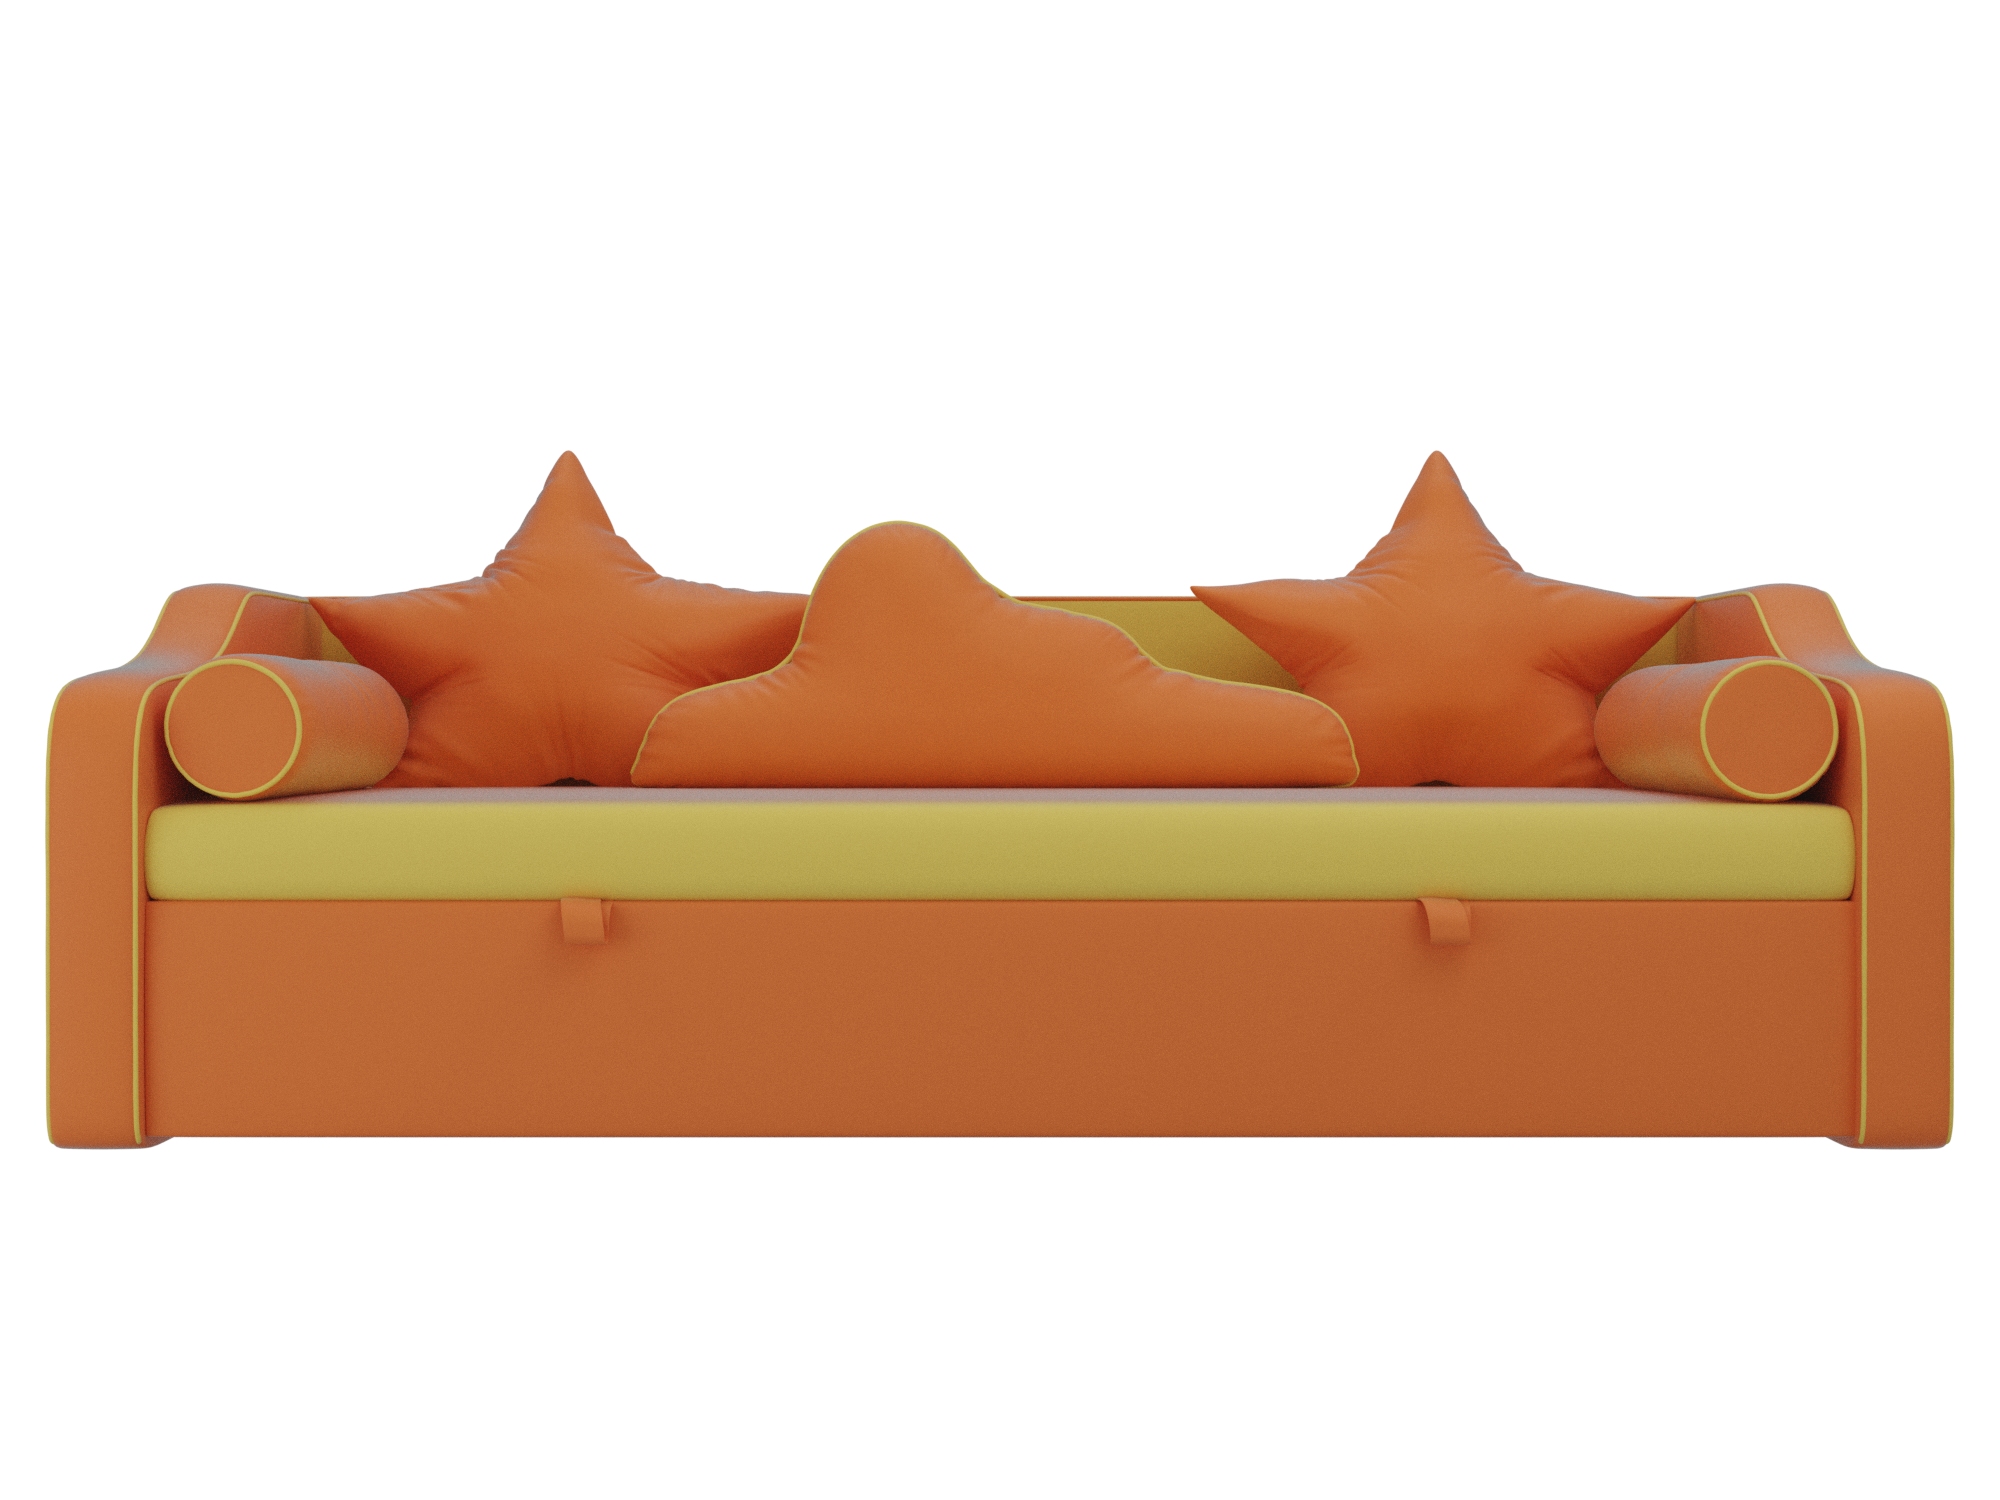 детский диван кровать рико mebelvia желтый оранжевый экокожа лдсп Детский диван-кровать Рико MebelVia Желтый, Оранжевый, Экокожа, ЛДСП